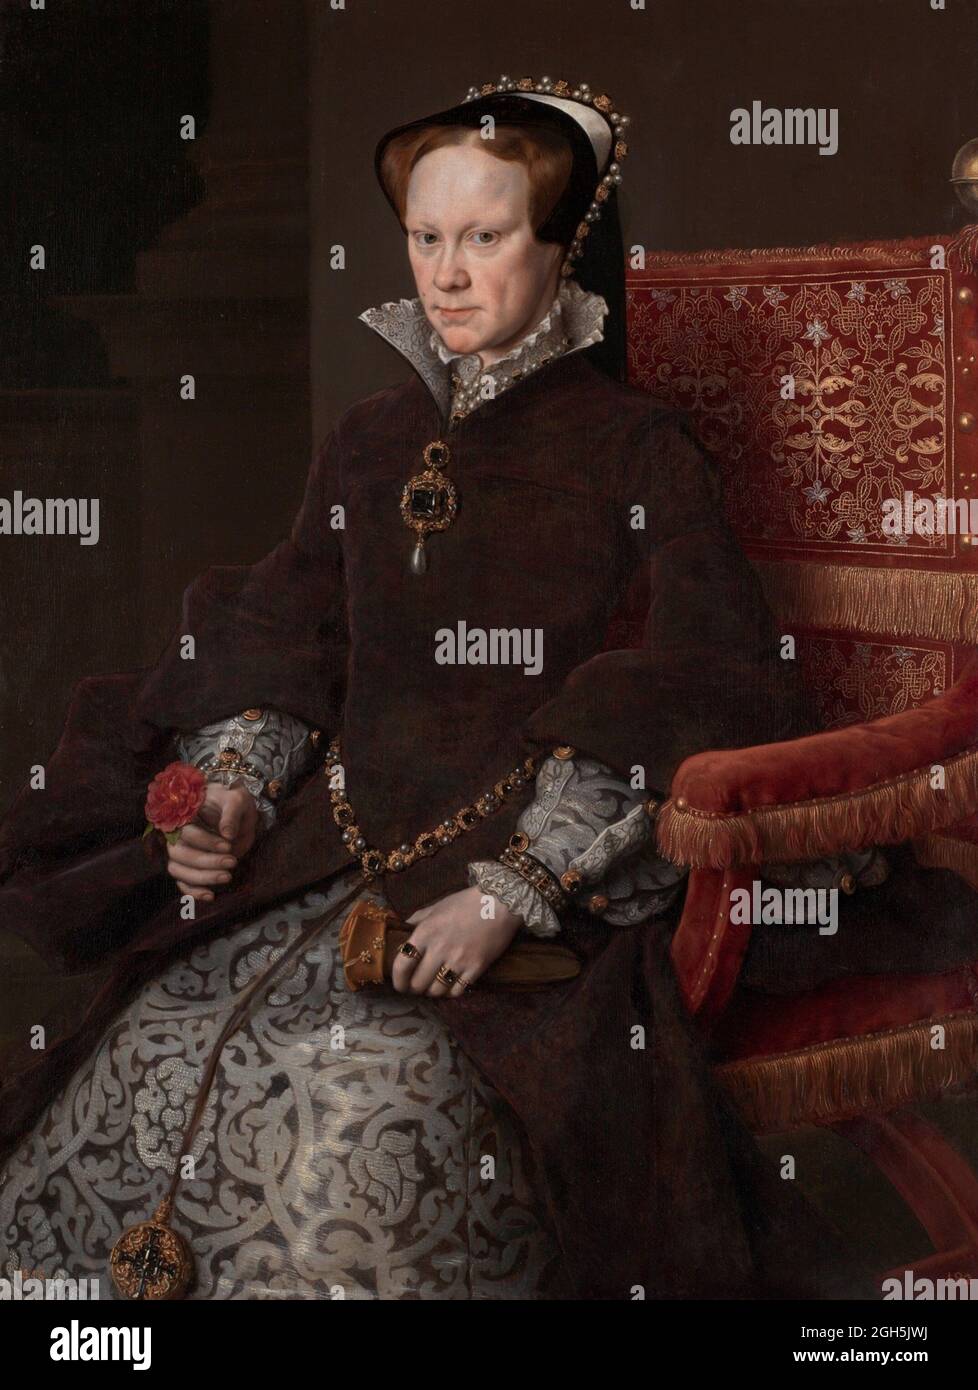 Ritratto della Regina Maria i (Bloody Mary) che fu Regina d'Inghilterra dal 1553 al 1558 Foto Stock